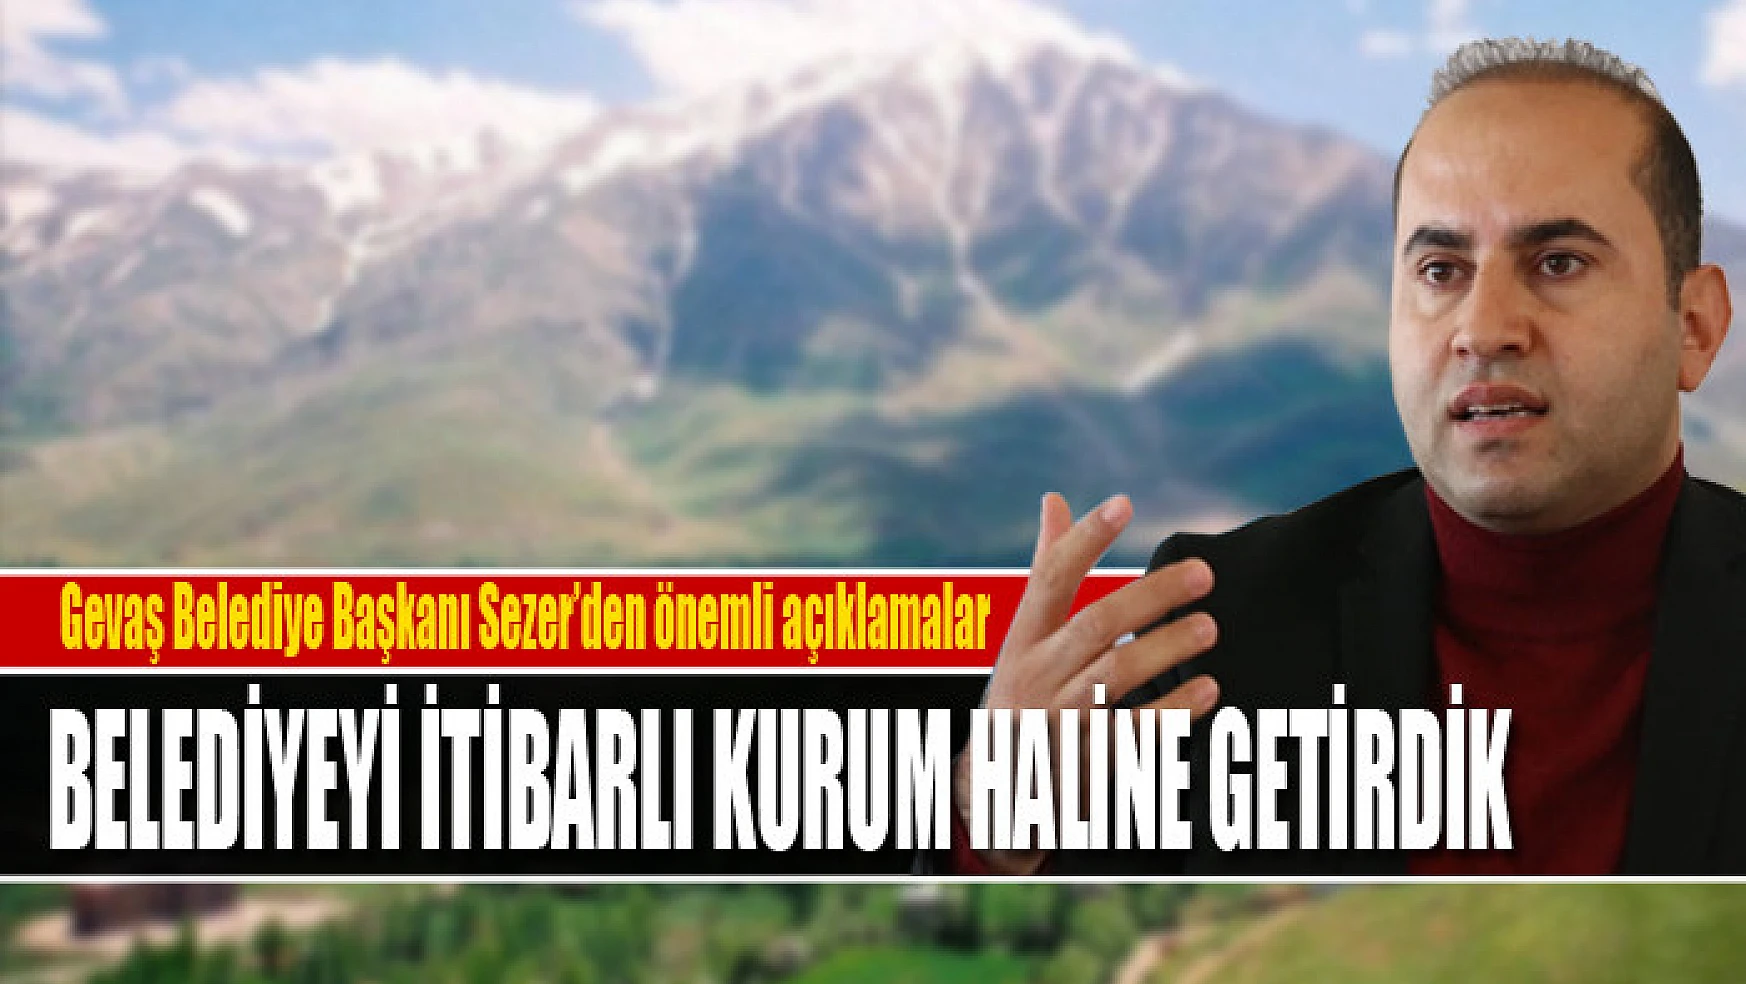 Gevaş Belediye Başkanı Murat Sezer: Belediyeyi itibarlı kurum haline getirdik